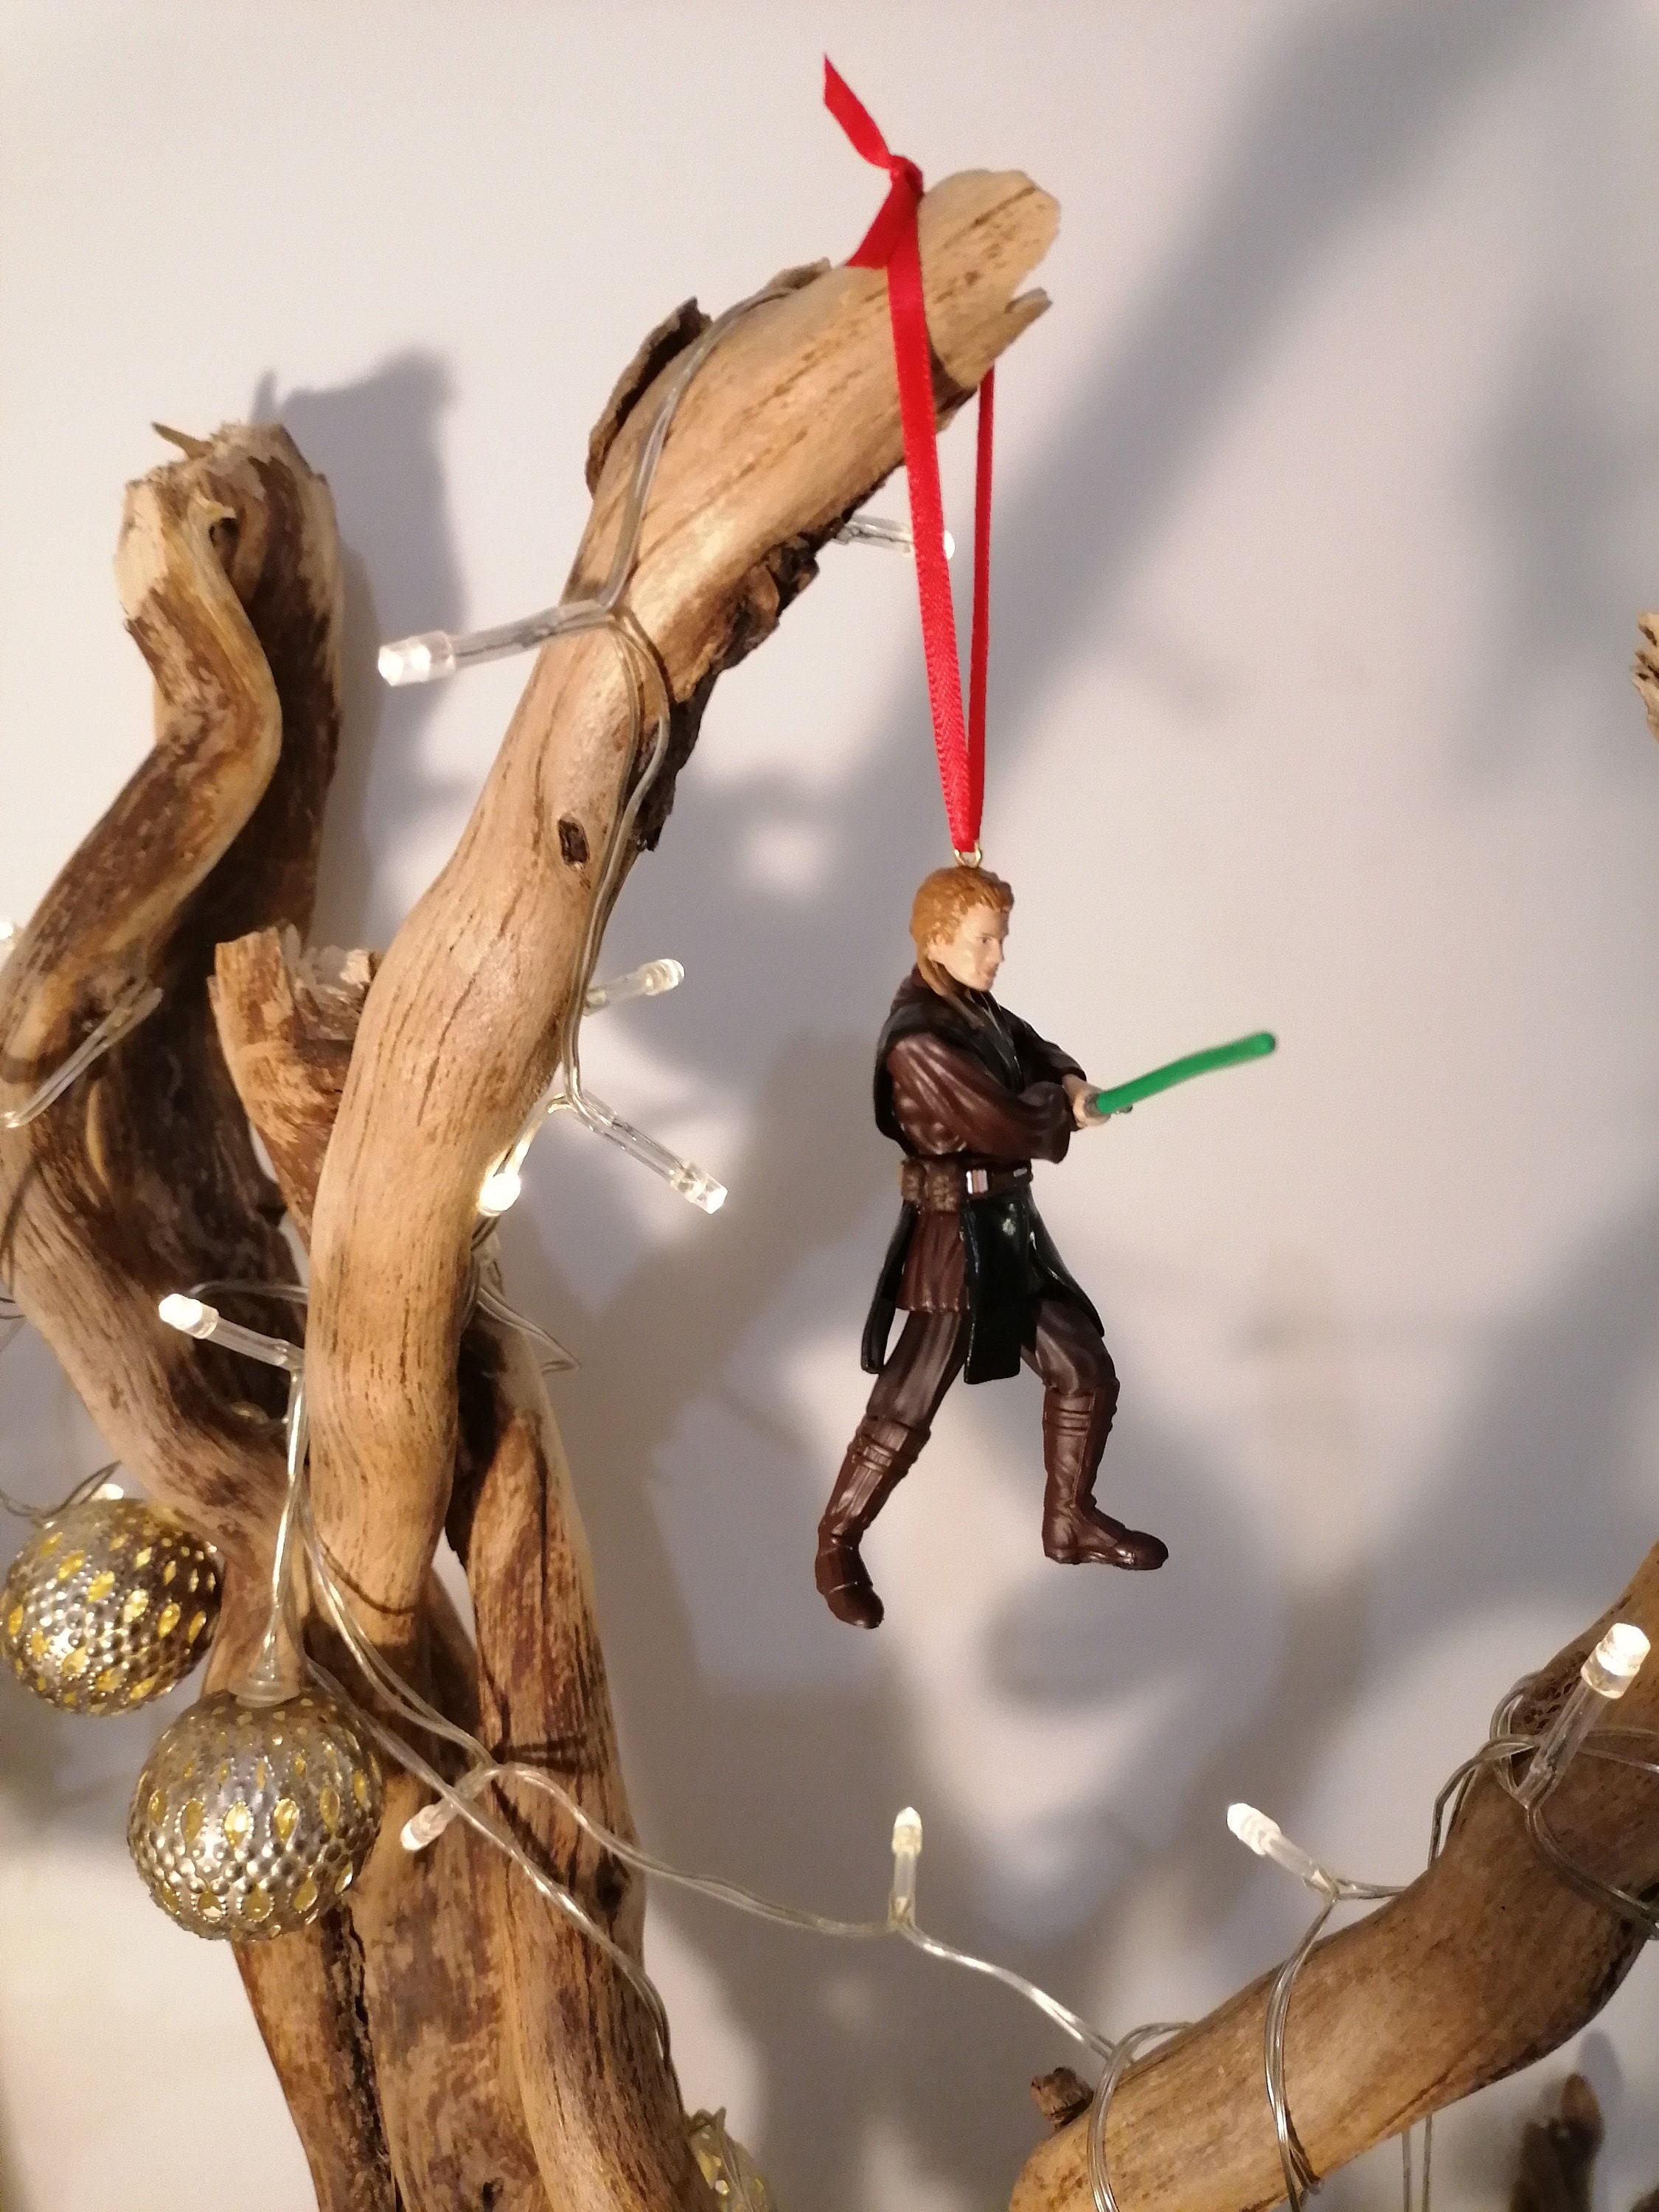 Idée de cadeaux de Noël : Star Wars drone par Propel - Movie Objects